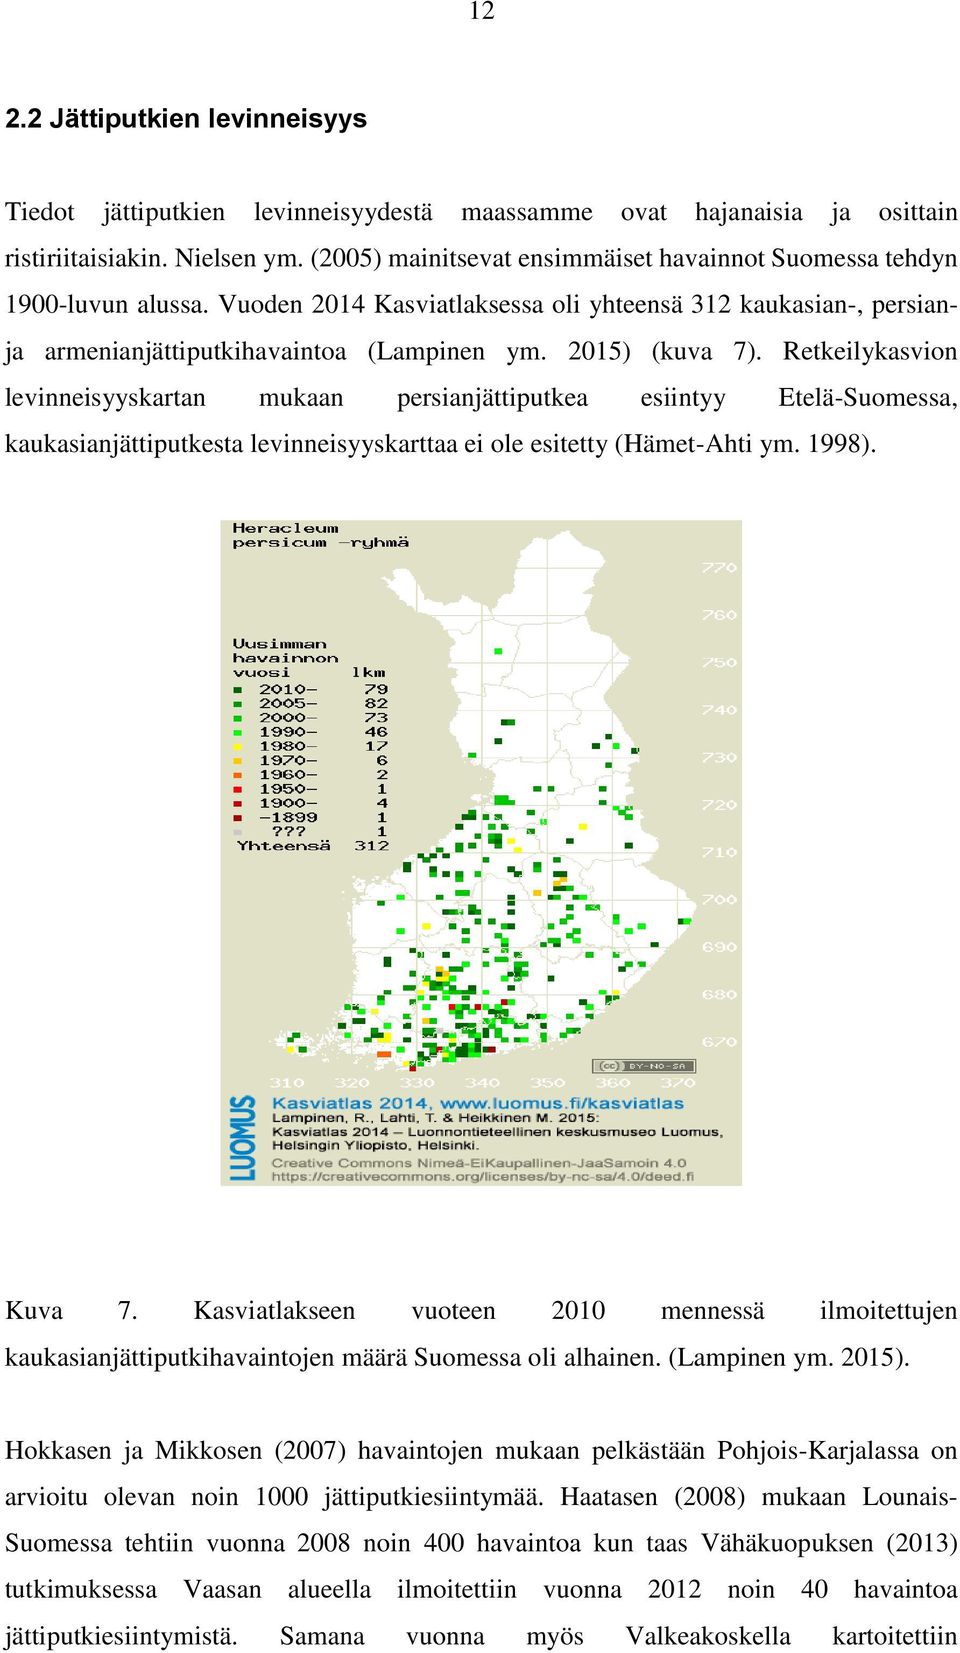 Retkeilykasvion levinneisyyskartan mukaan persianjättiputkea esiintyy Etelä-Suomessa, kaukasianjättiputkesta levinneisyyskarttaa ei ole esitetty (Hämet-Ahti ym. 1998). Kuva 7.